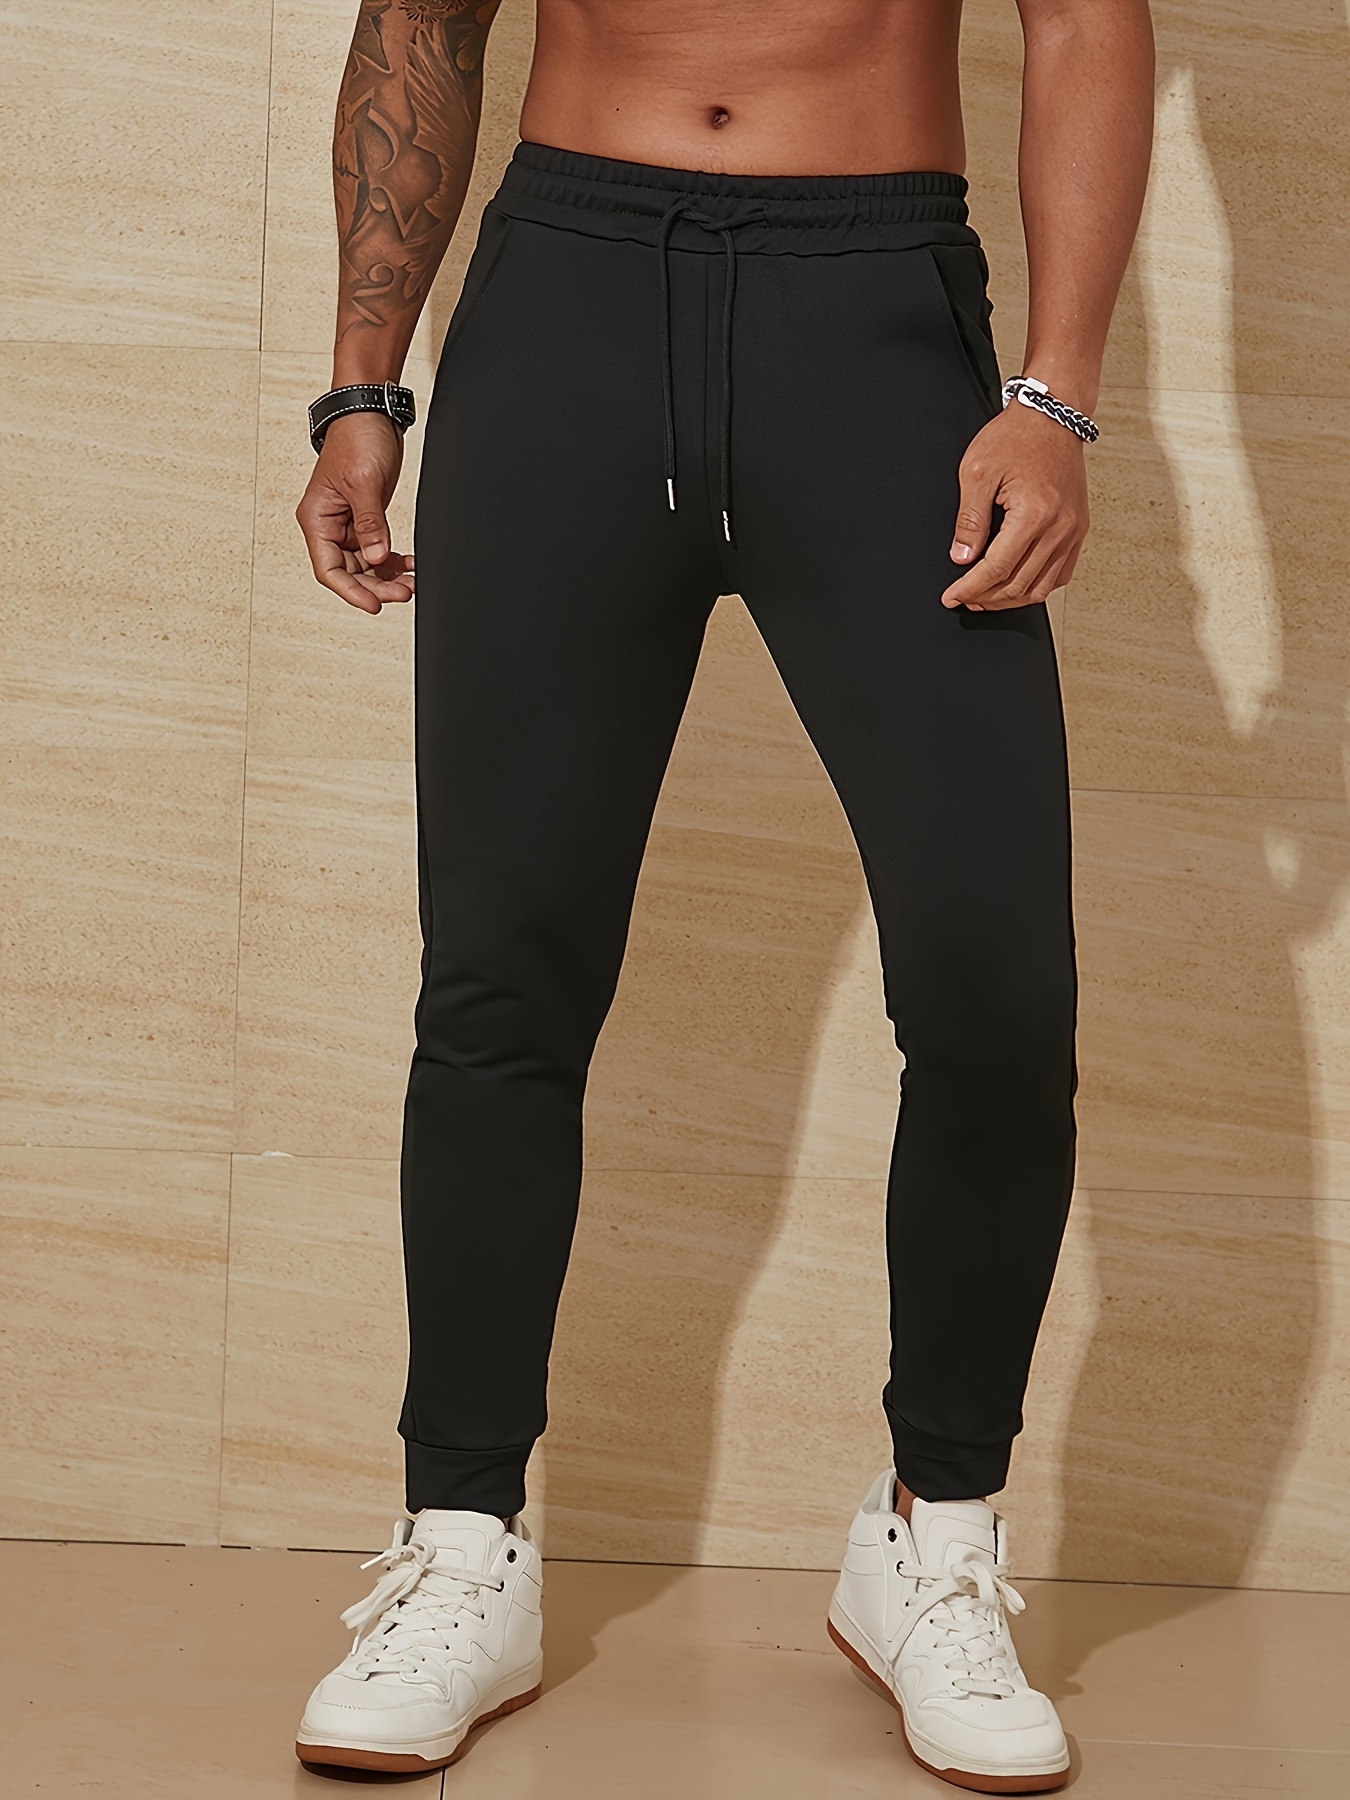 Men's Joggers Fitness Pant Bottoms Fashion Sweatpants Slim - Temu